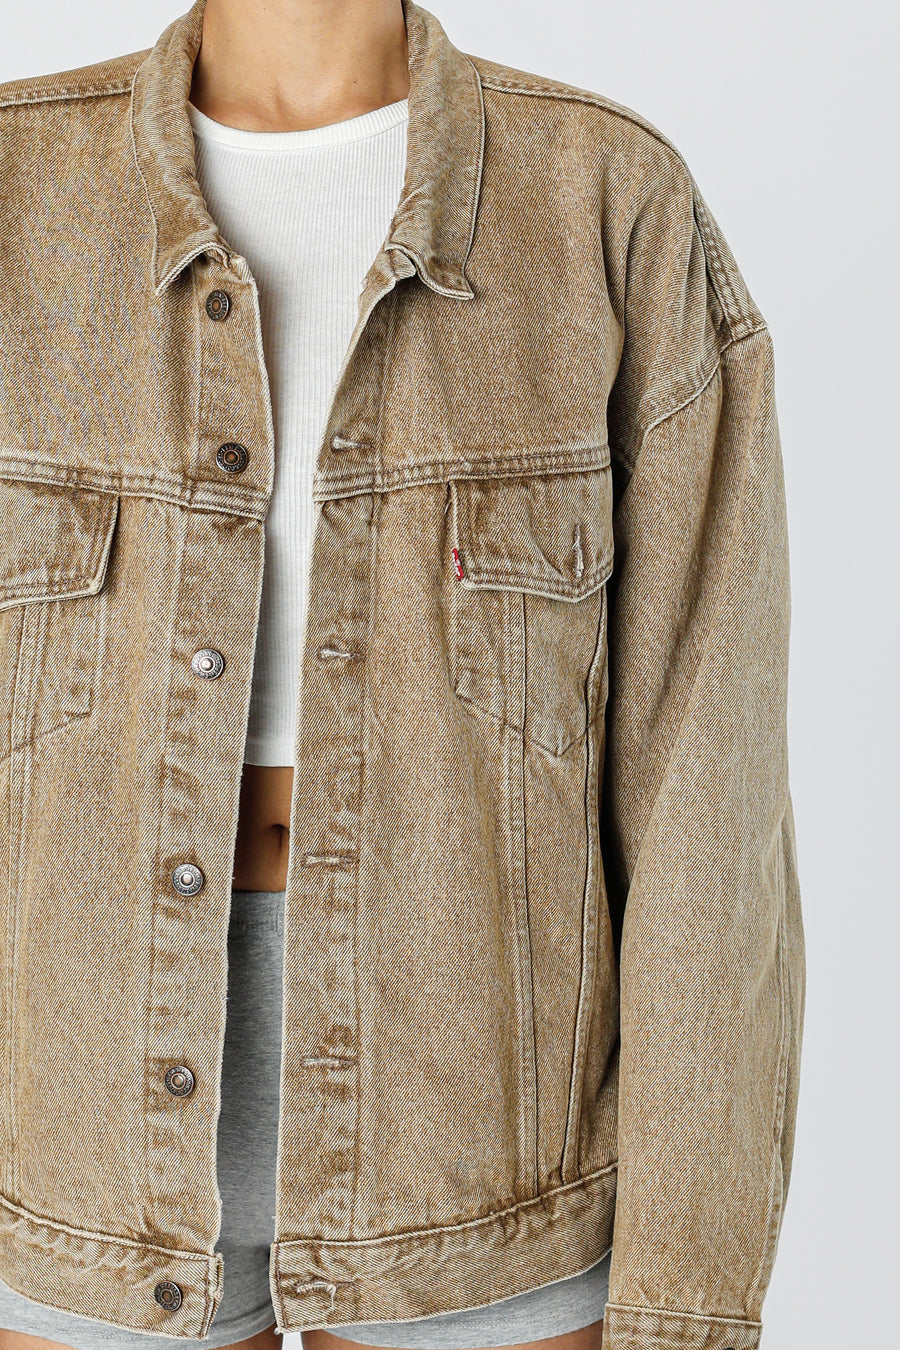 Vintage Levi's Denim Jacket - XL